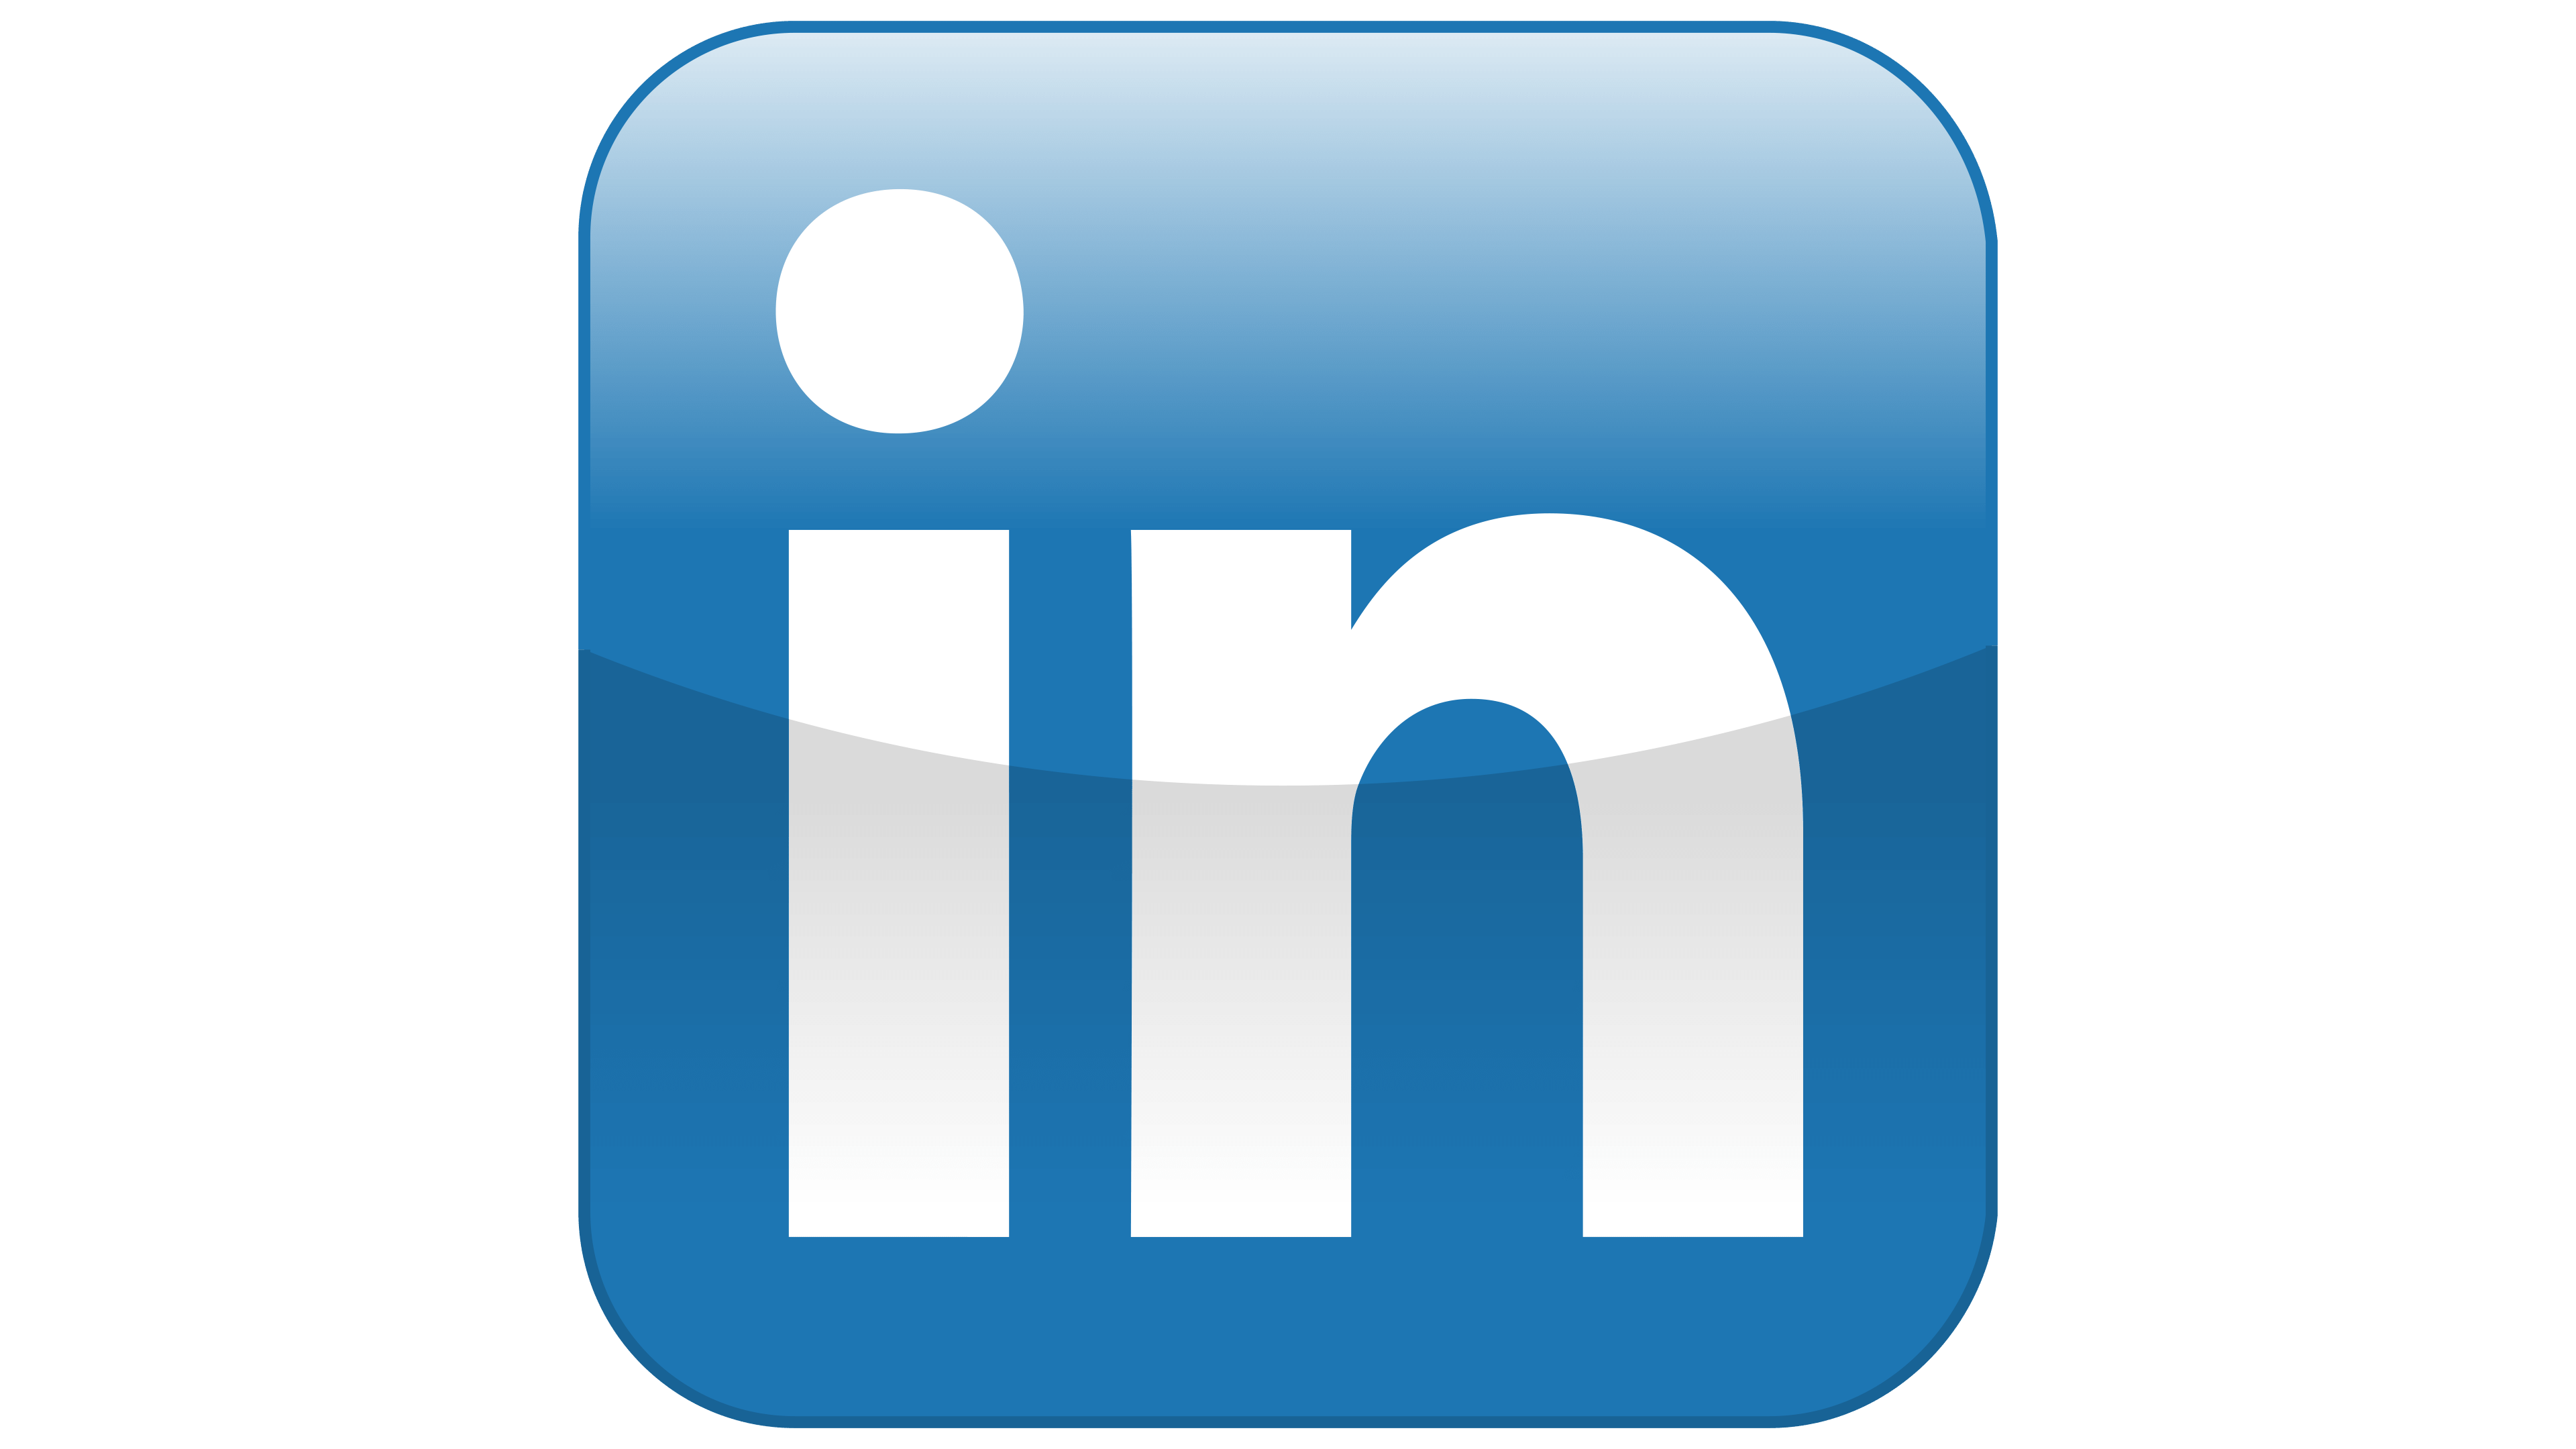 linkedin logo 2017 png